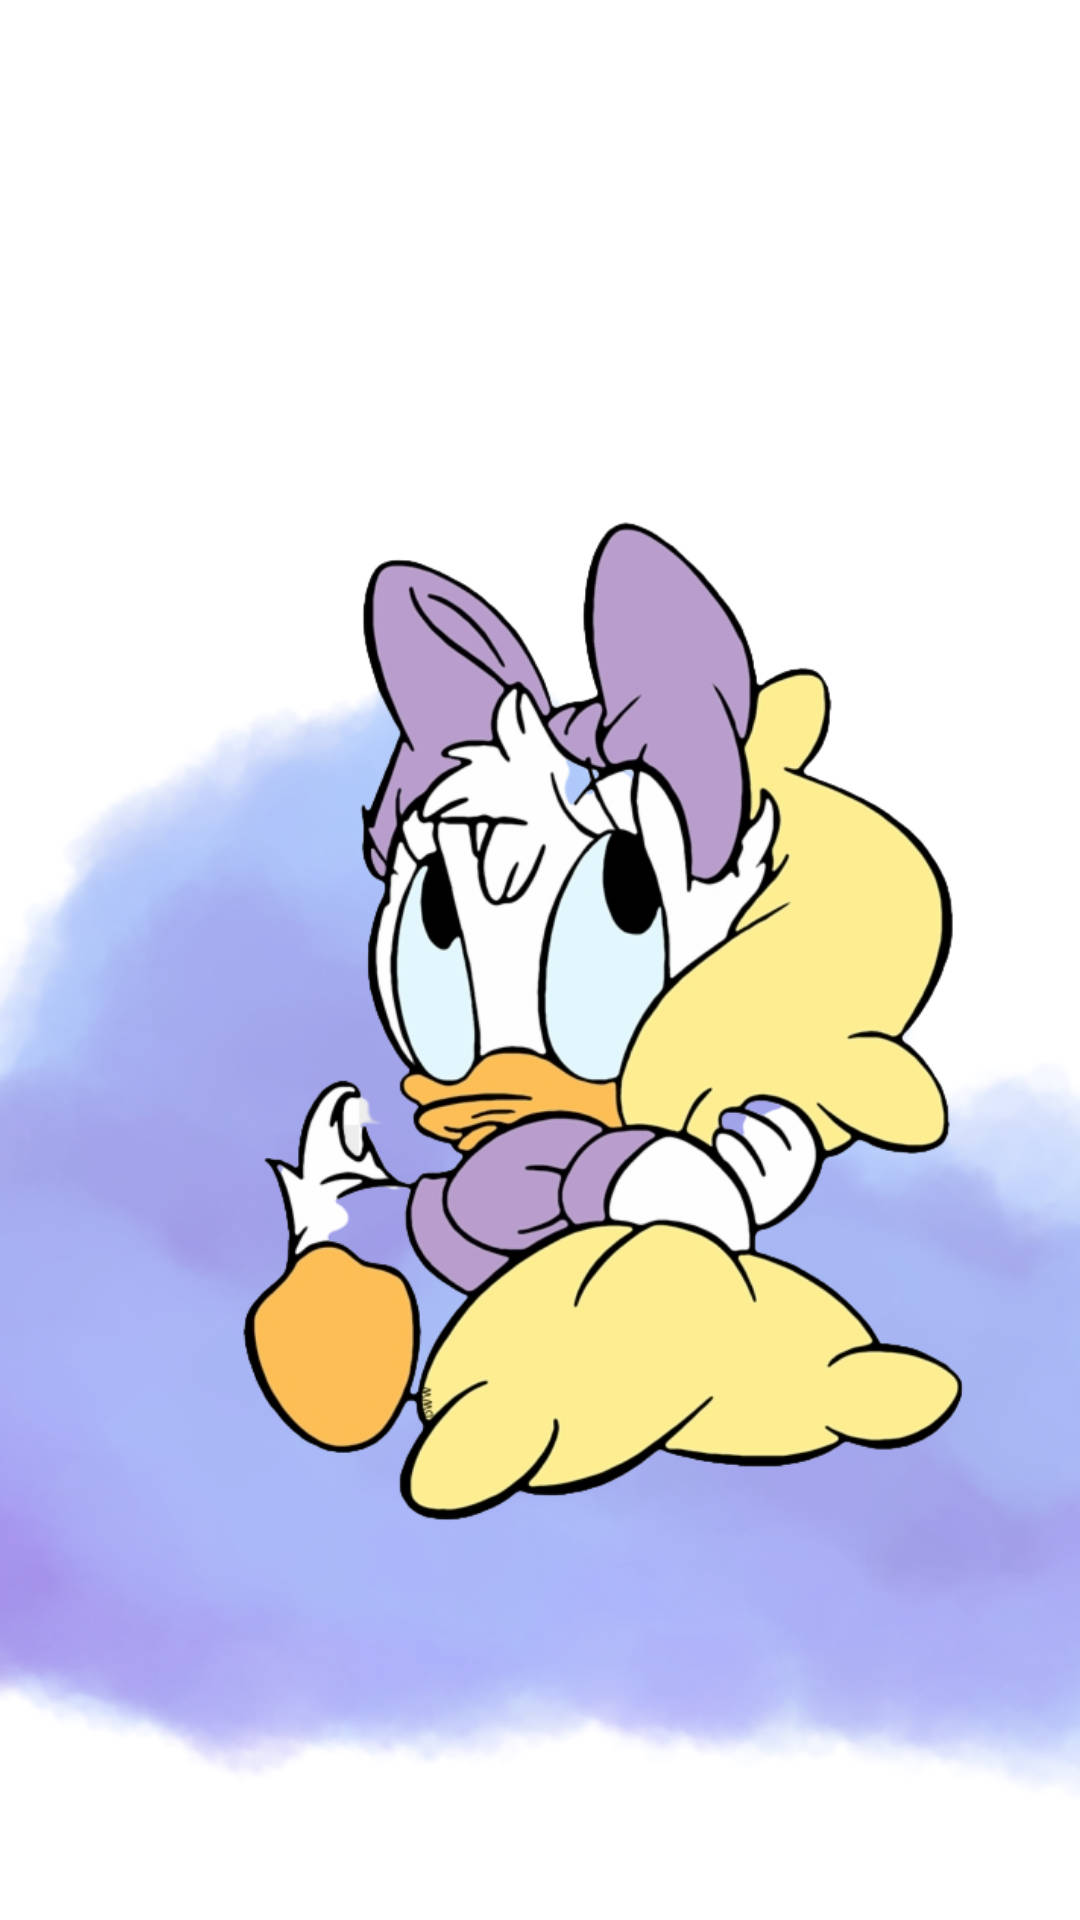 Adorável Daisy Duck Em Um Fundo De Nuvens Roxas. Papel de Parede